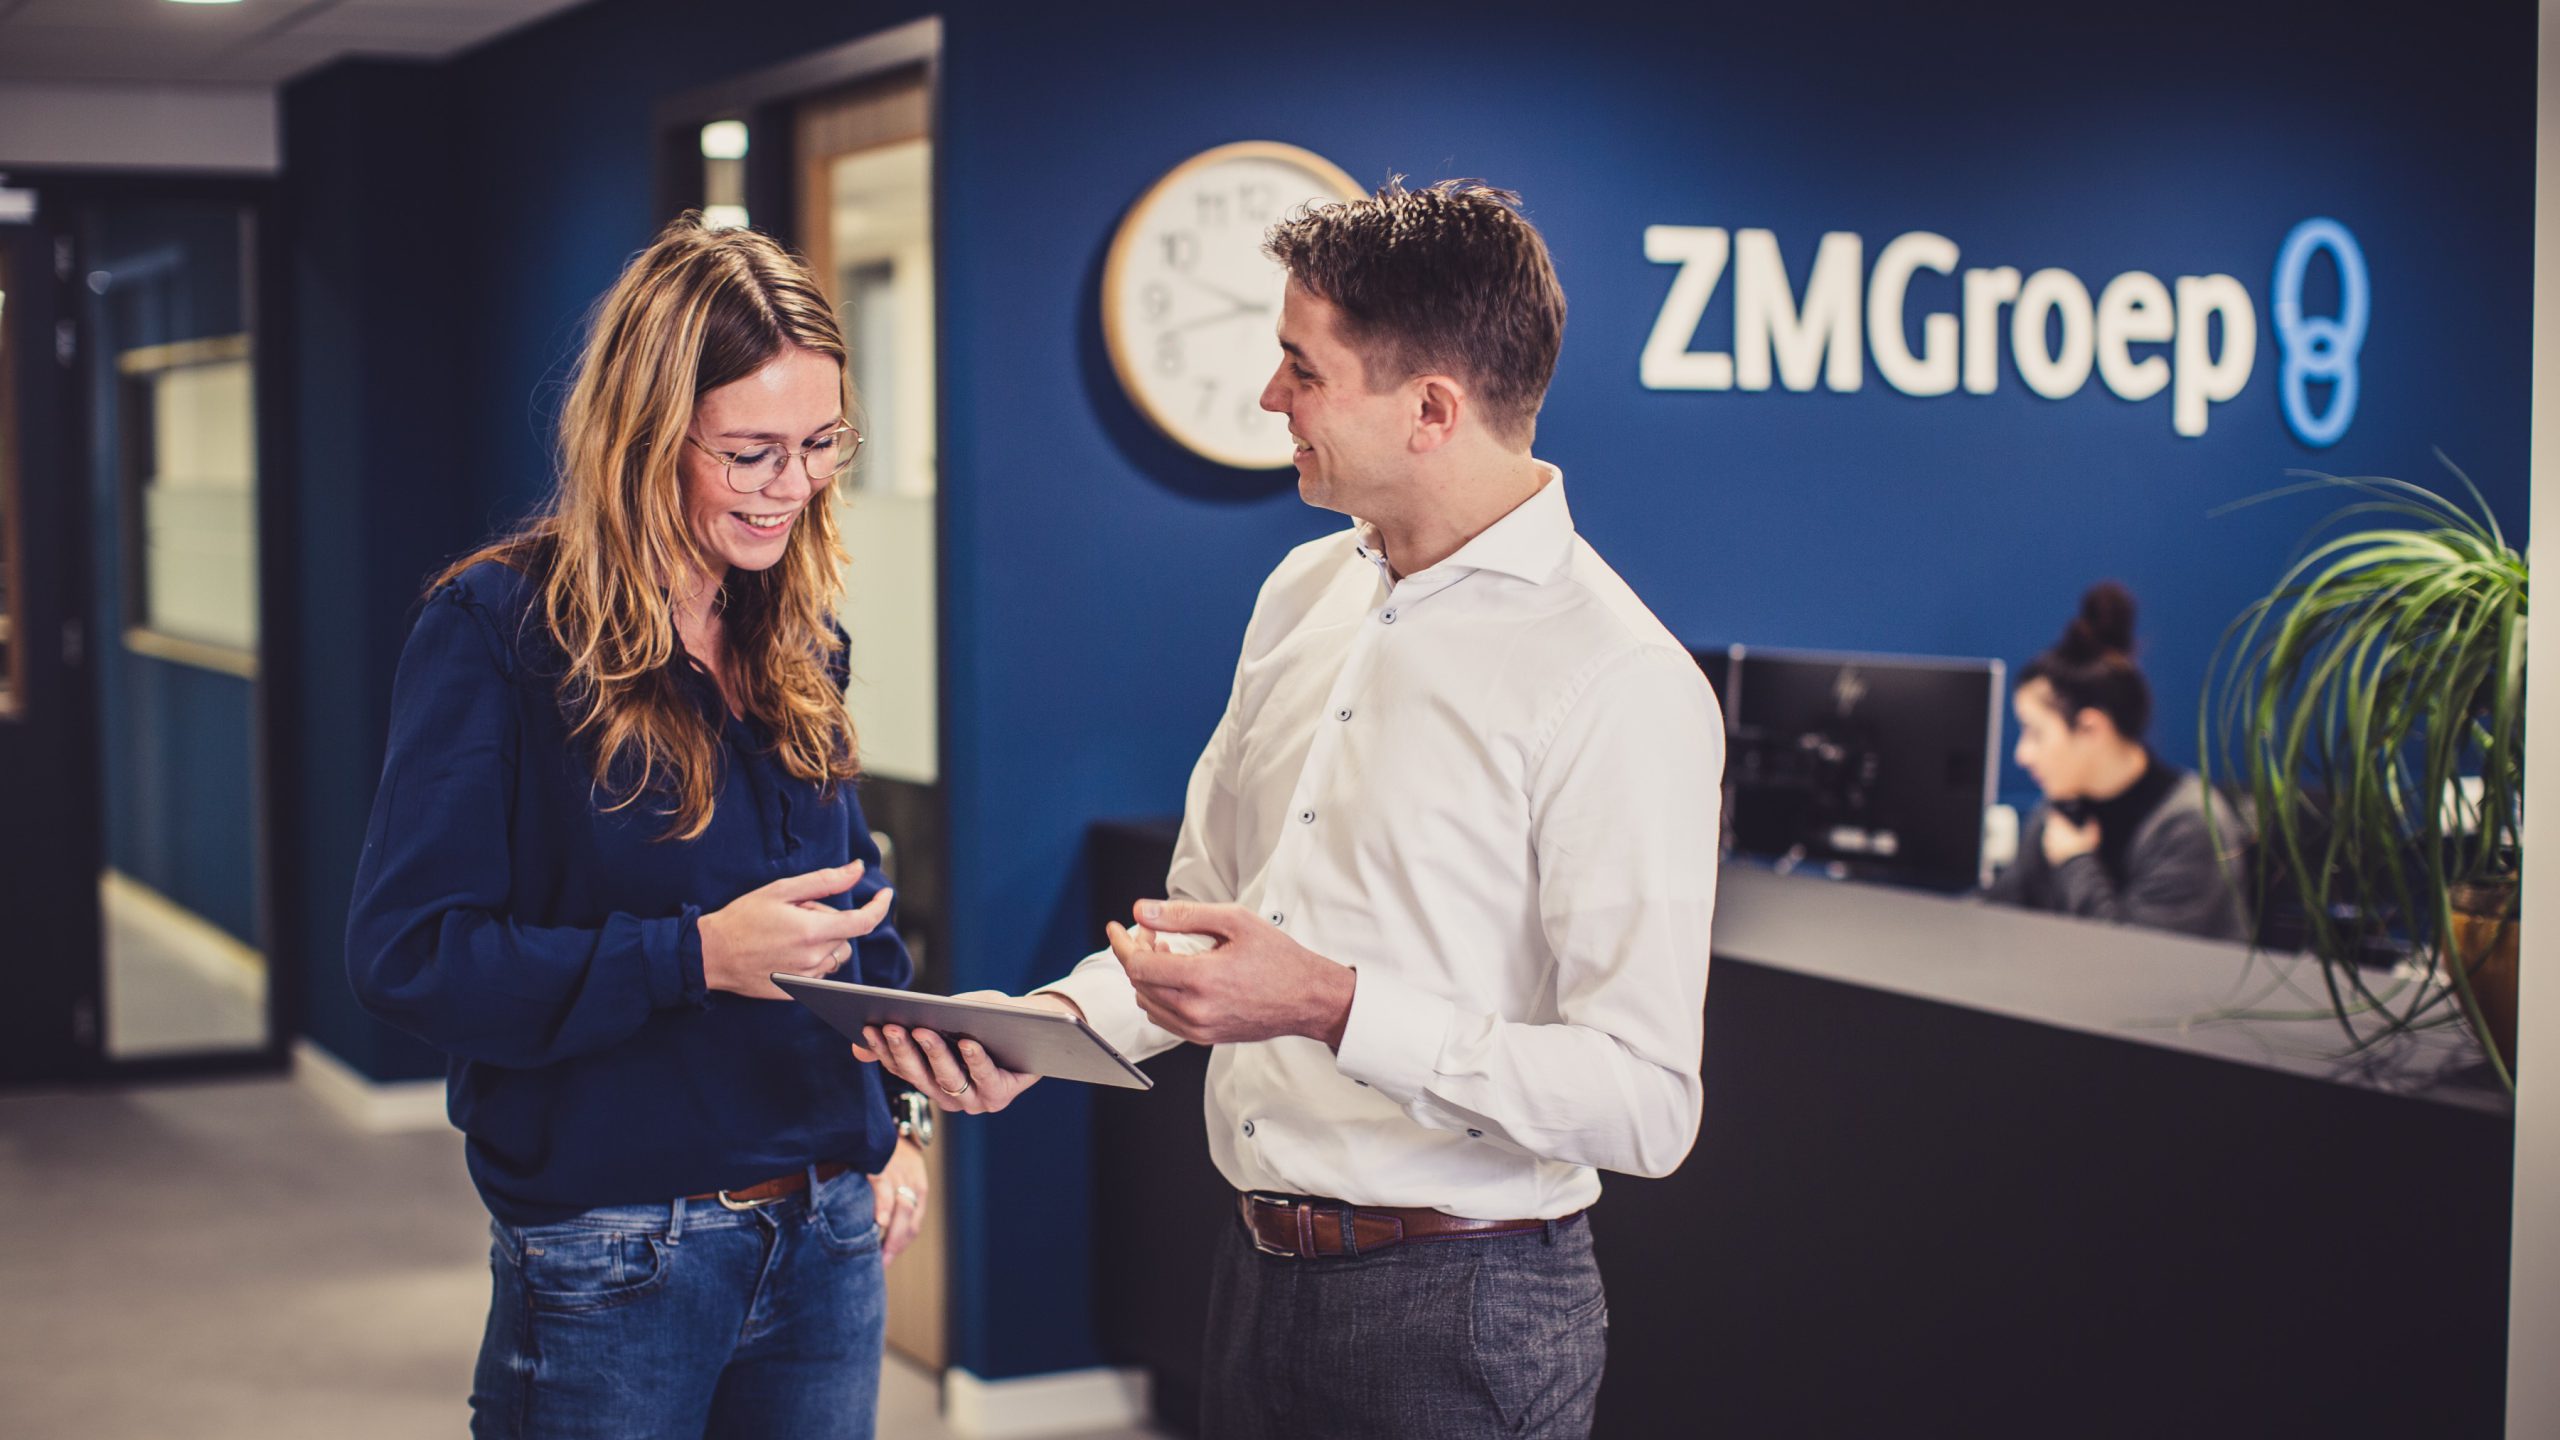 ZMGroep macht klare Geschäfte mit TriFact365